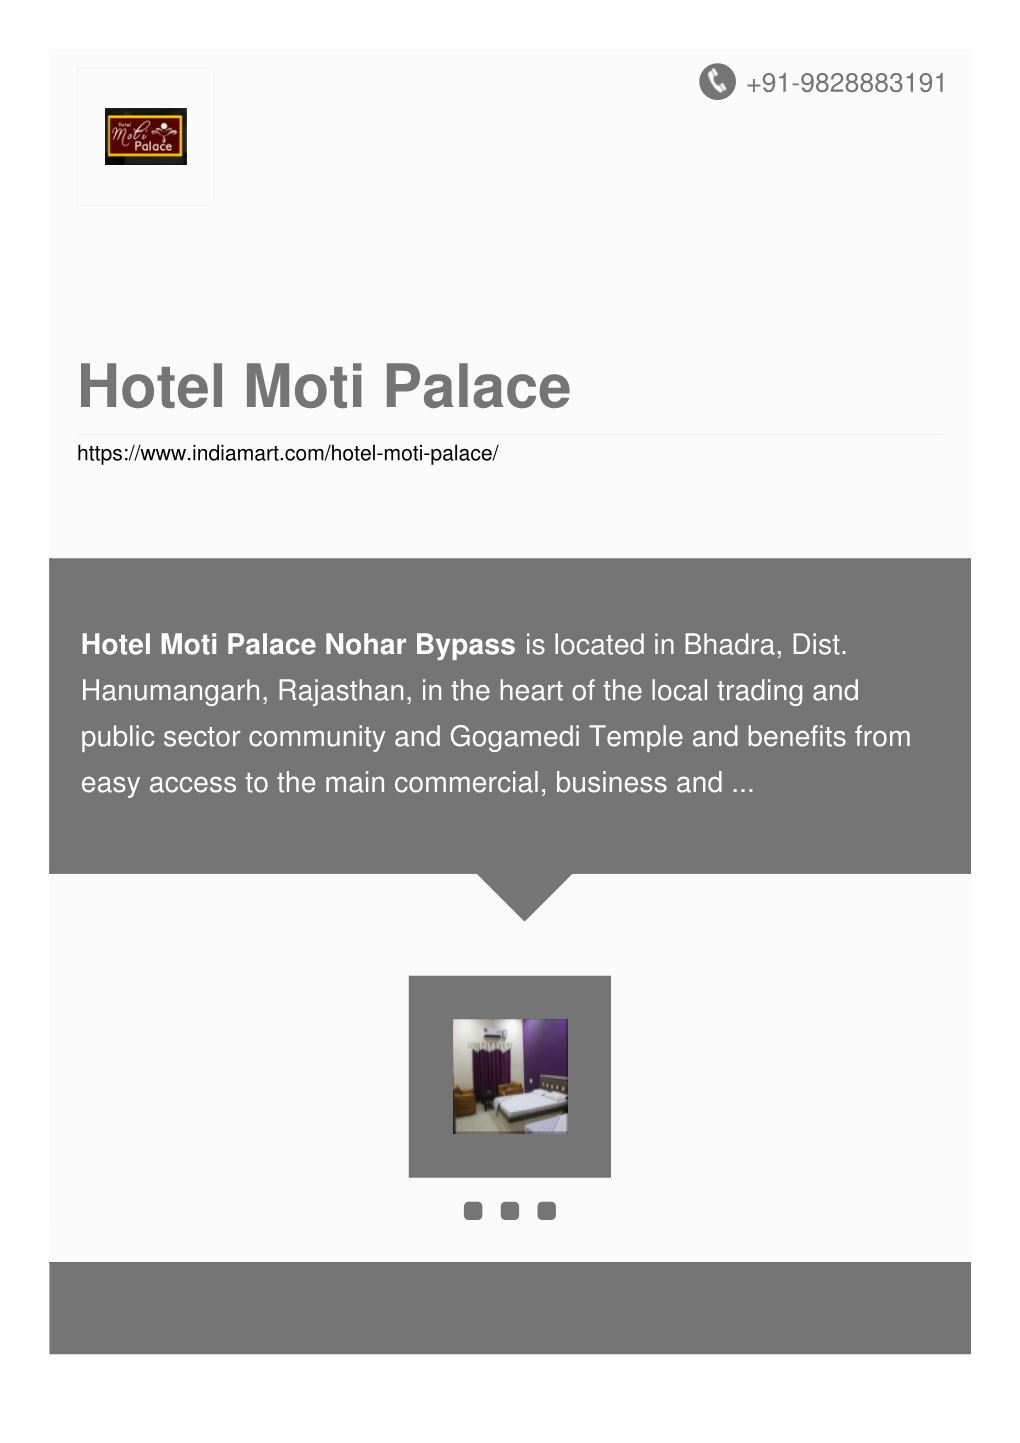 Hotel Moti Palace